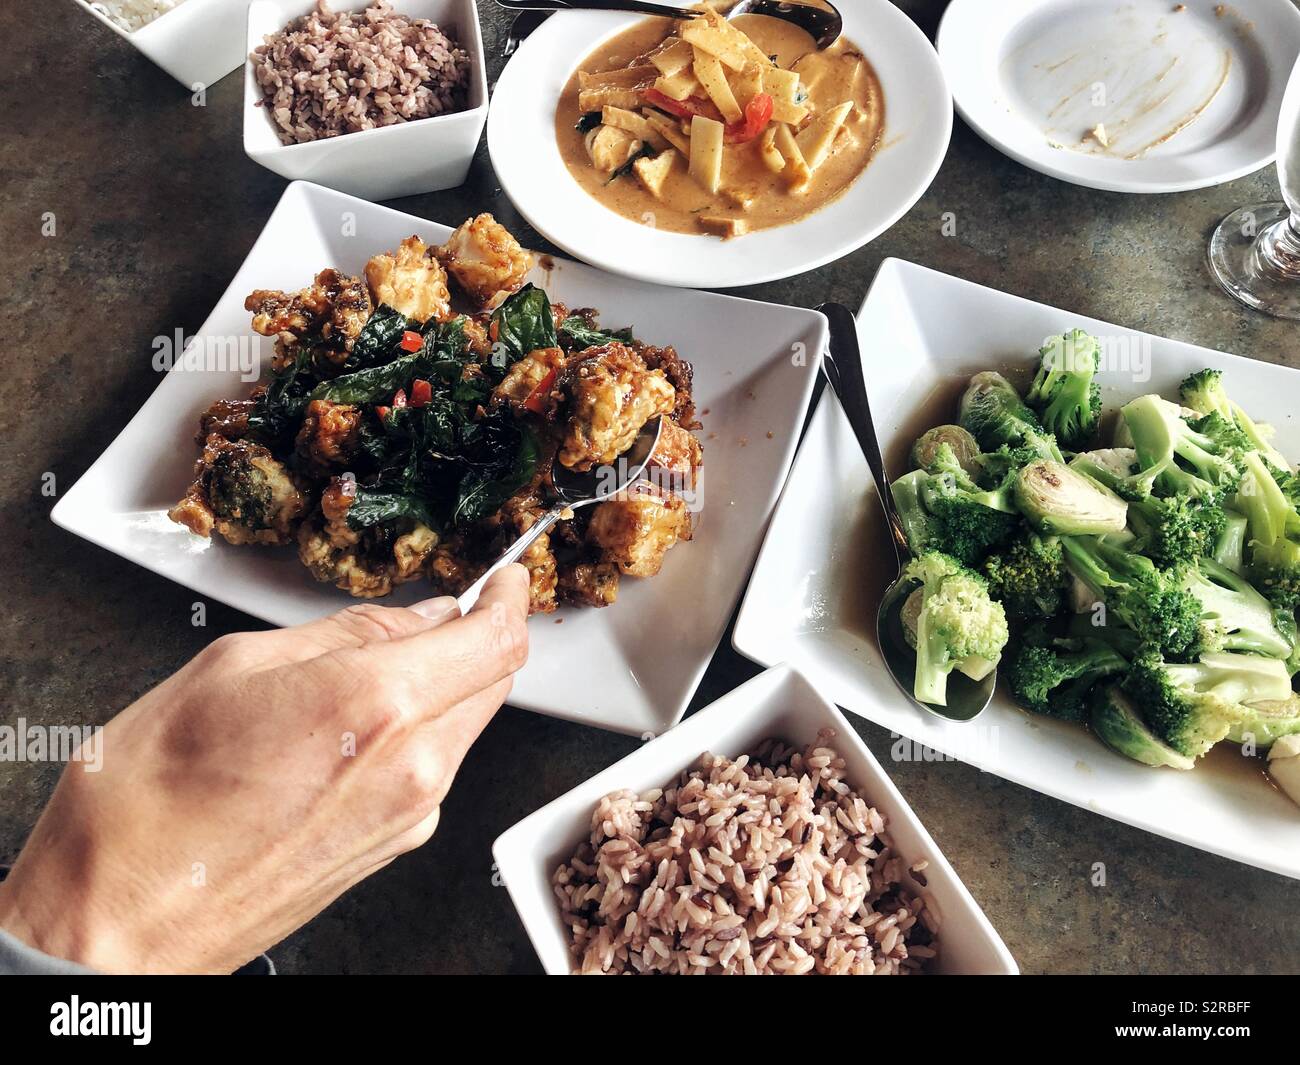 Eine Leckere vegane Mahlzeit auf dem Tisch Stockfoto